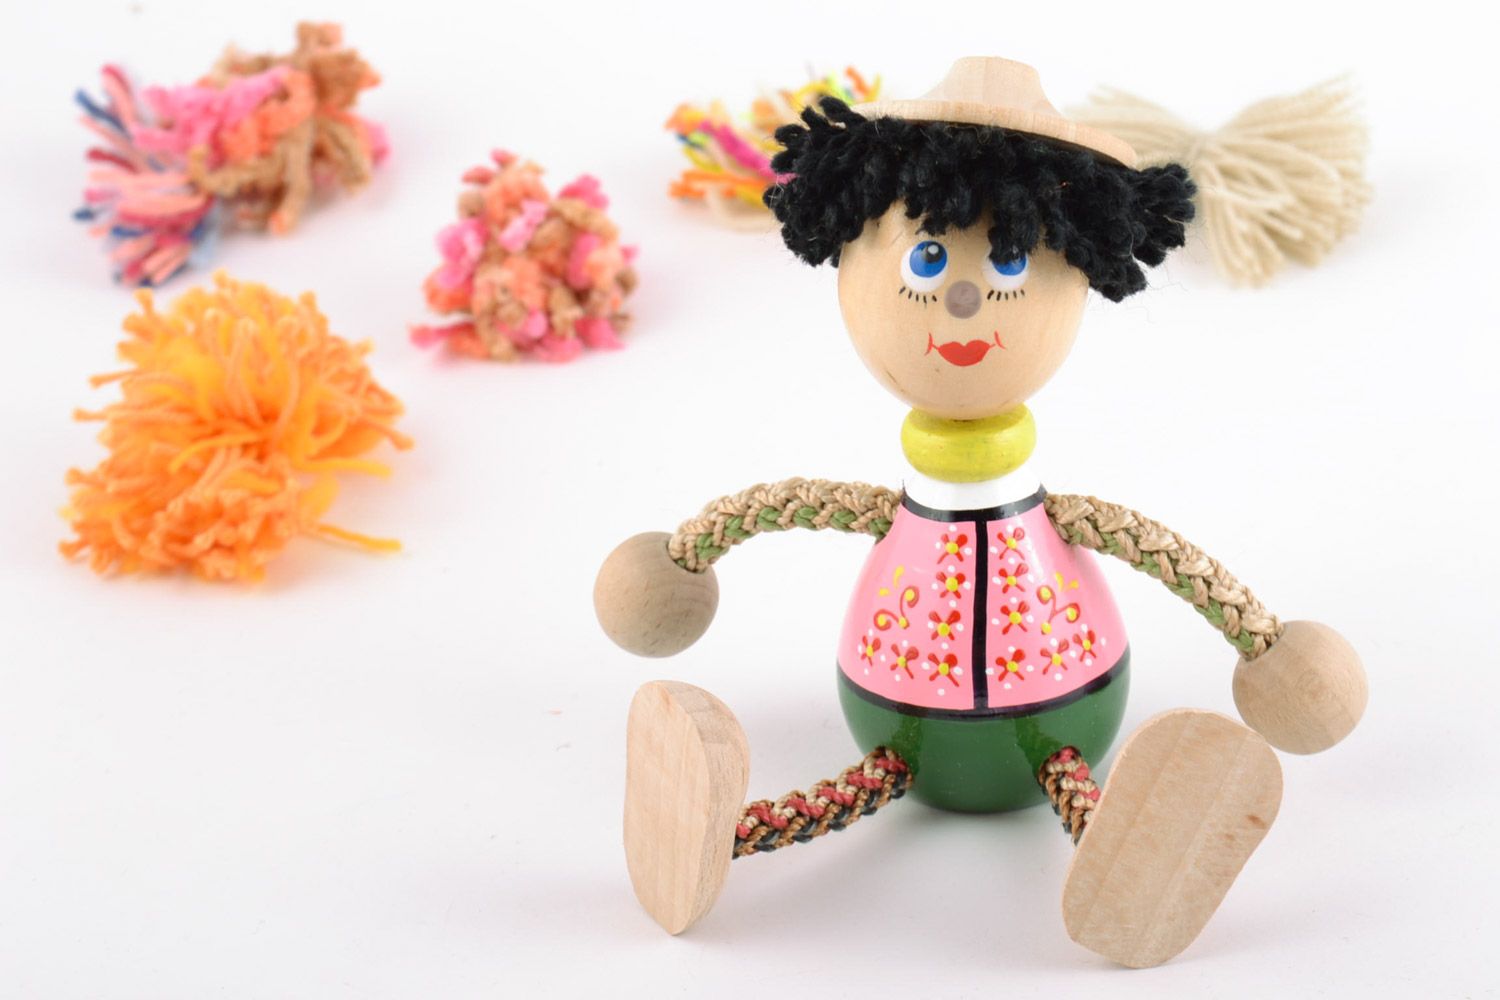 Öko Spielzeug aus Holz handmade umweltfreundlich künstlerisch Junge foto 1